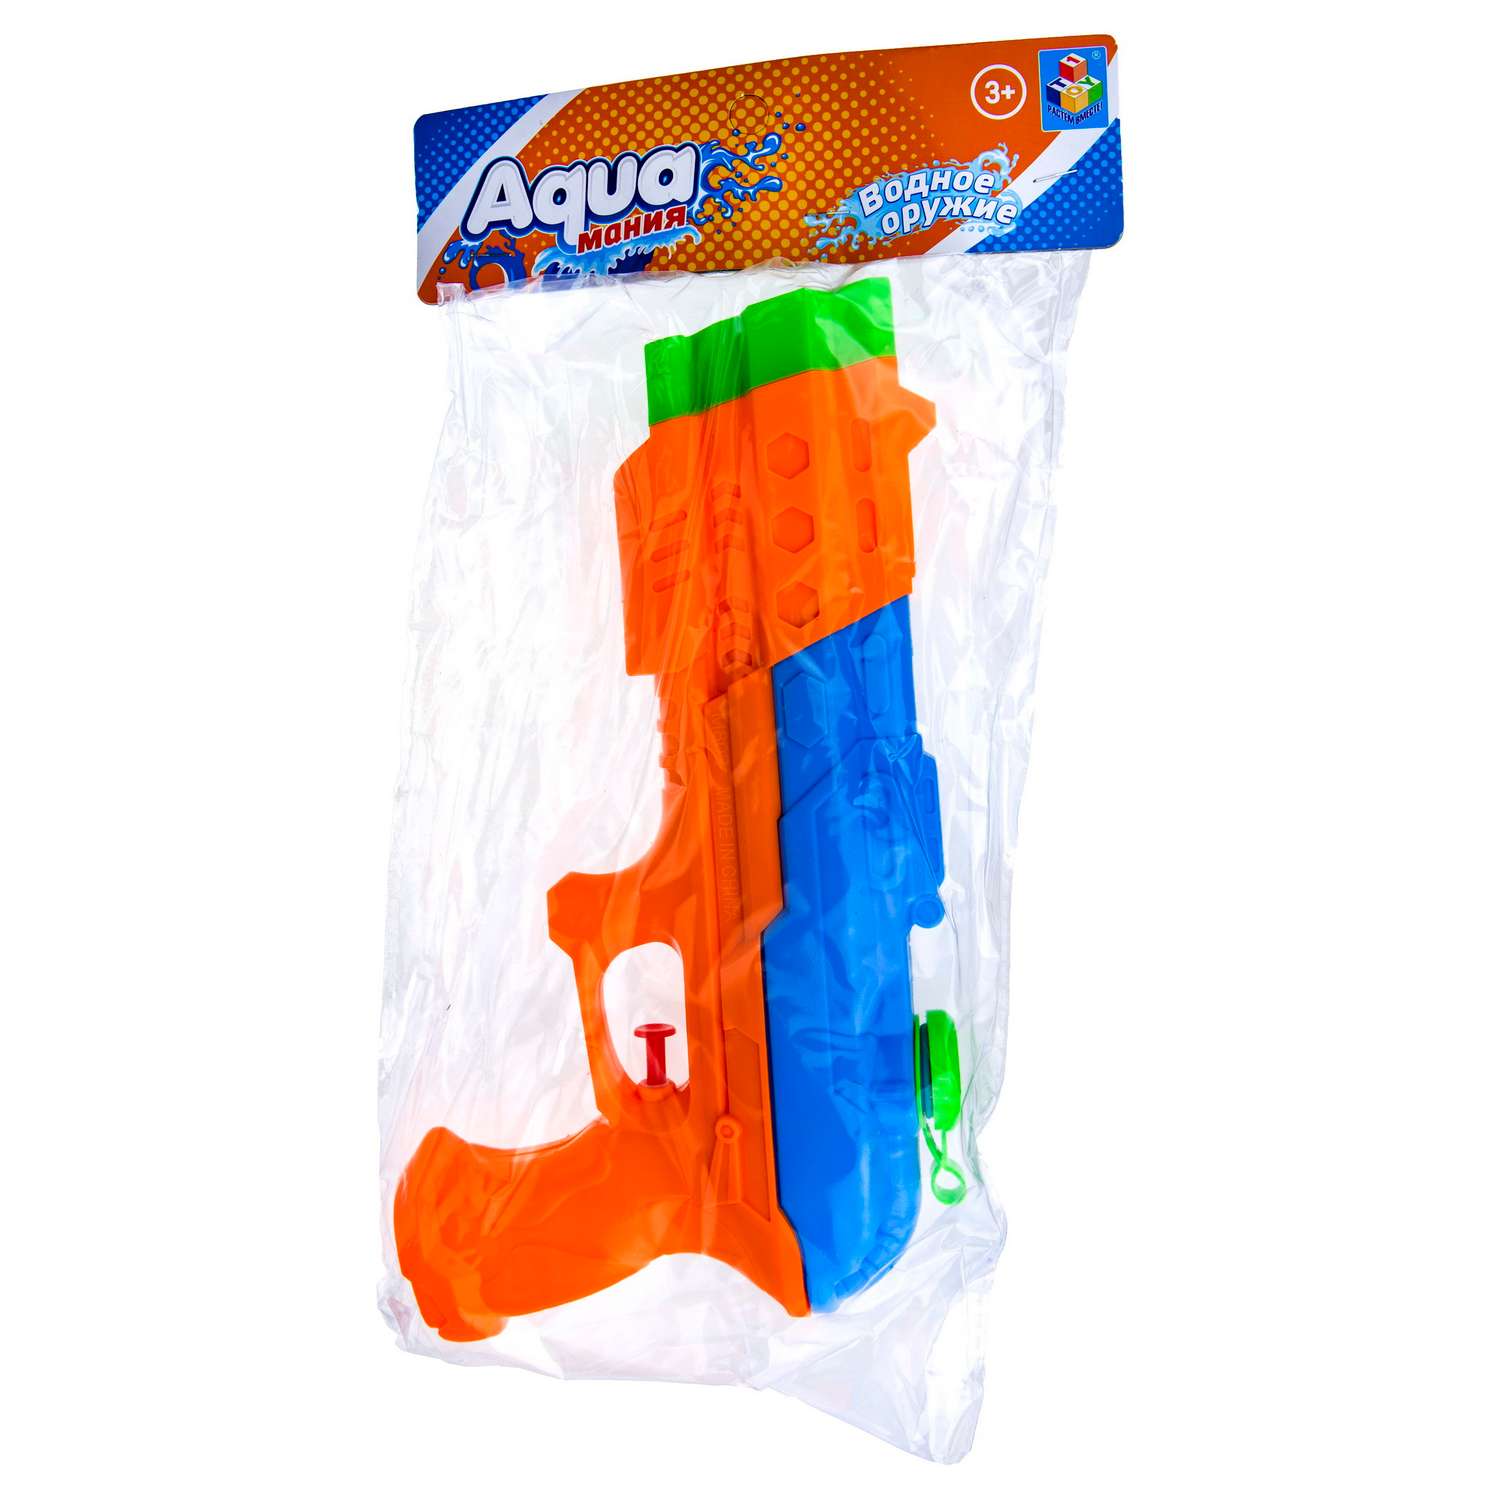 Водное оружие Aqua мания Пистолет оранжево-синий - фото 3